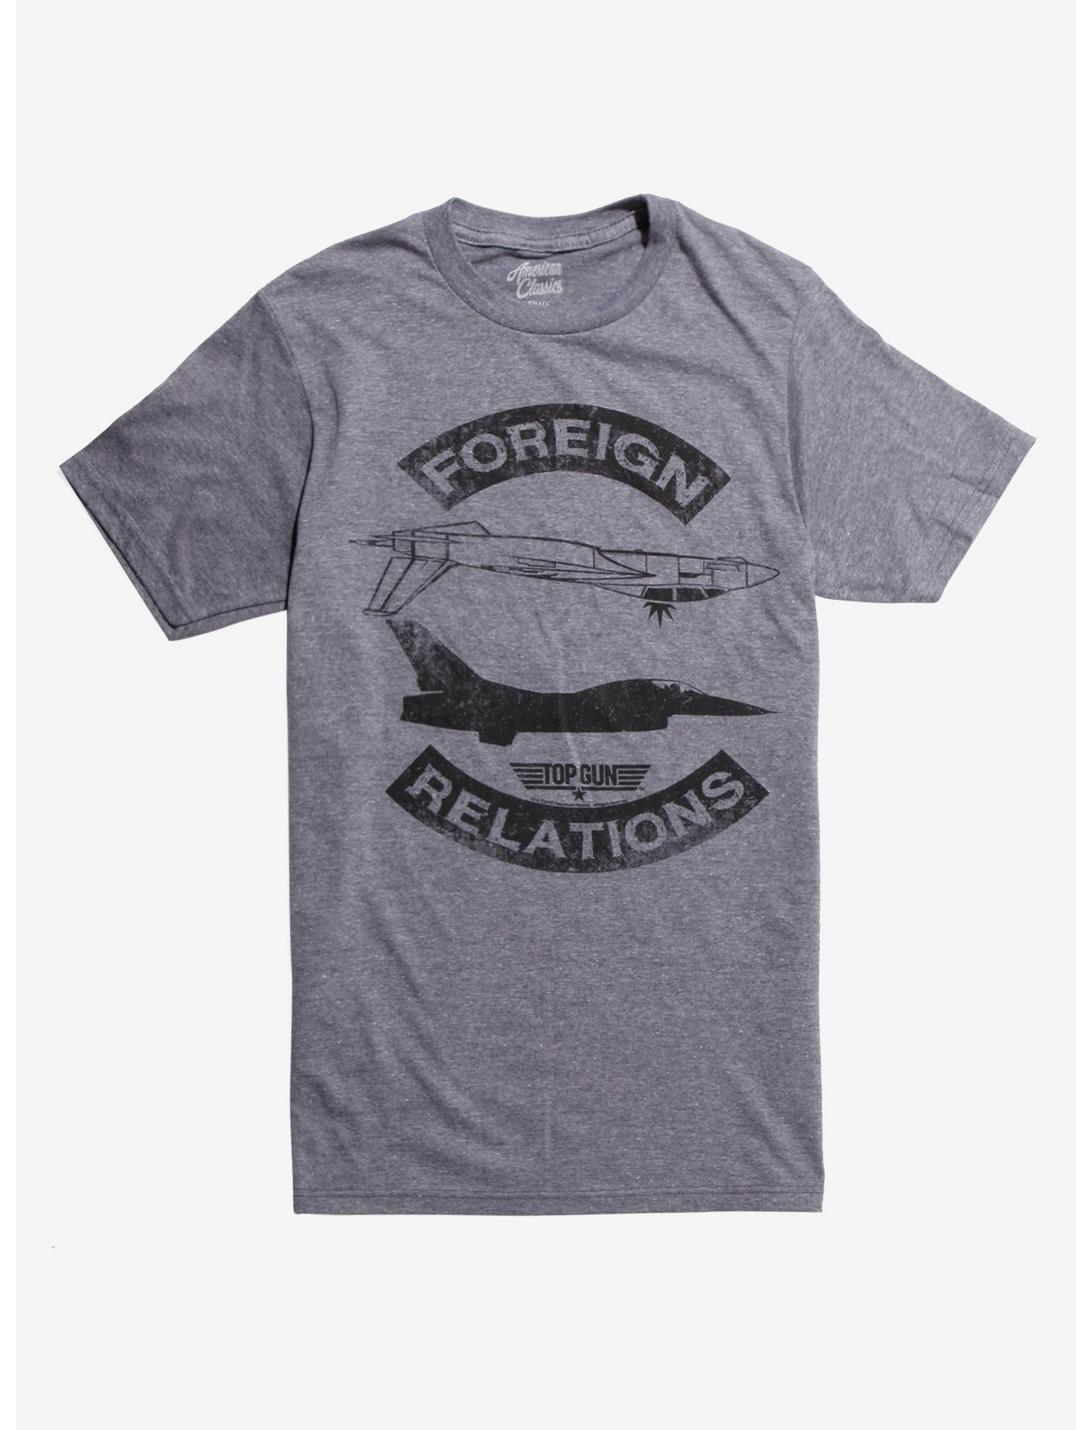 Top Gun Foreign Relations T-Shirt, BLACK, hi-res